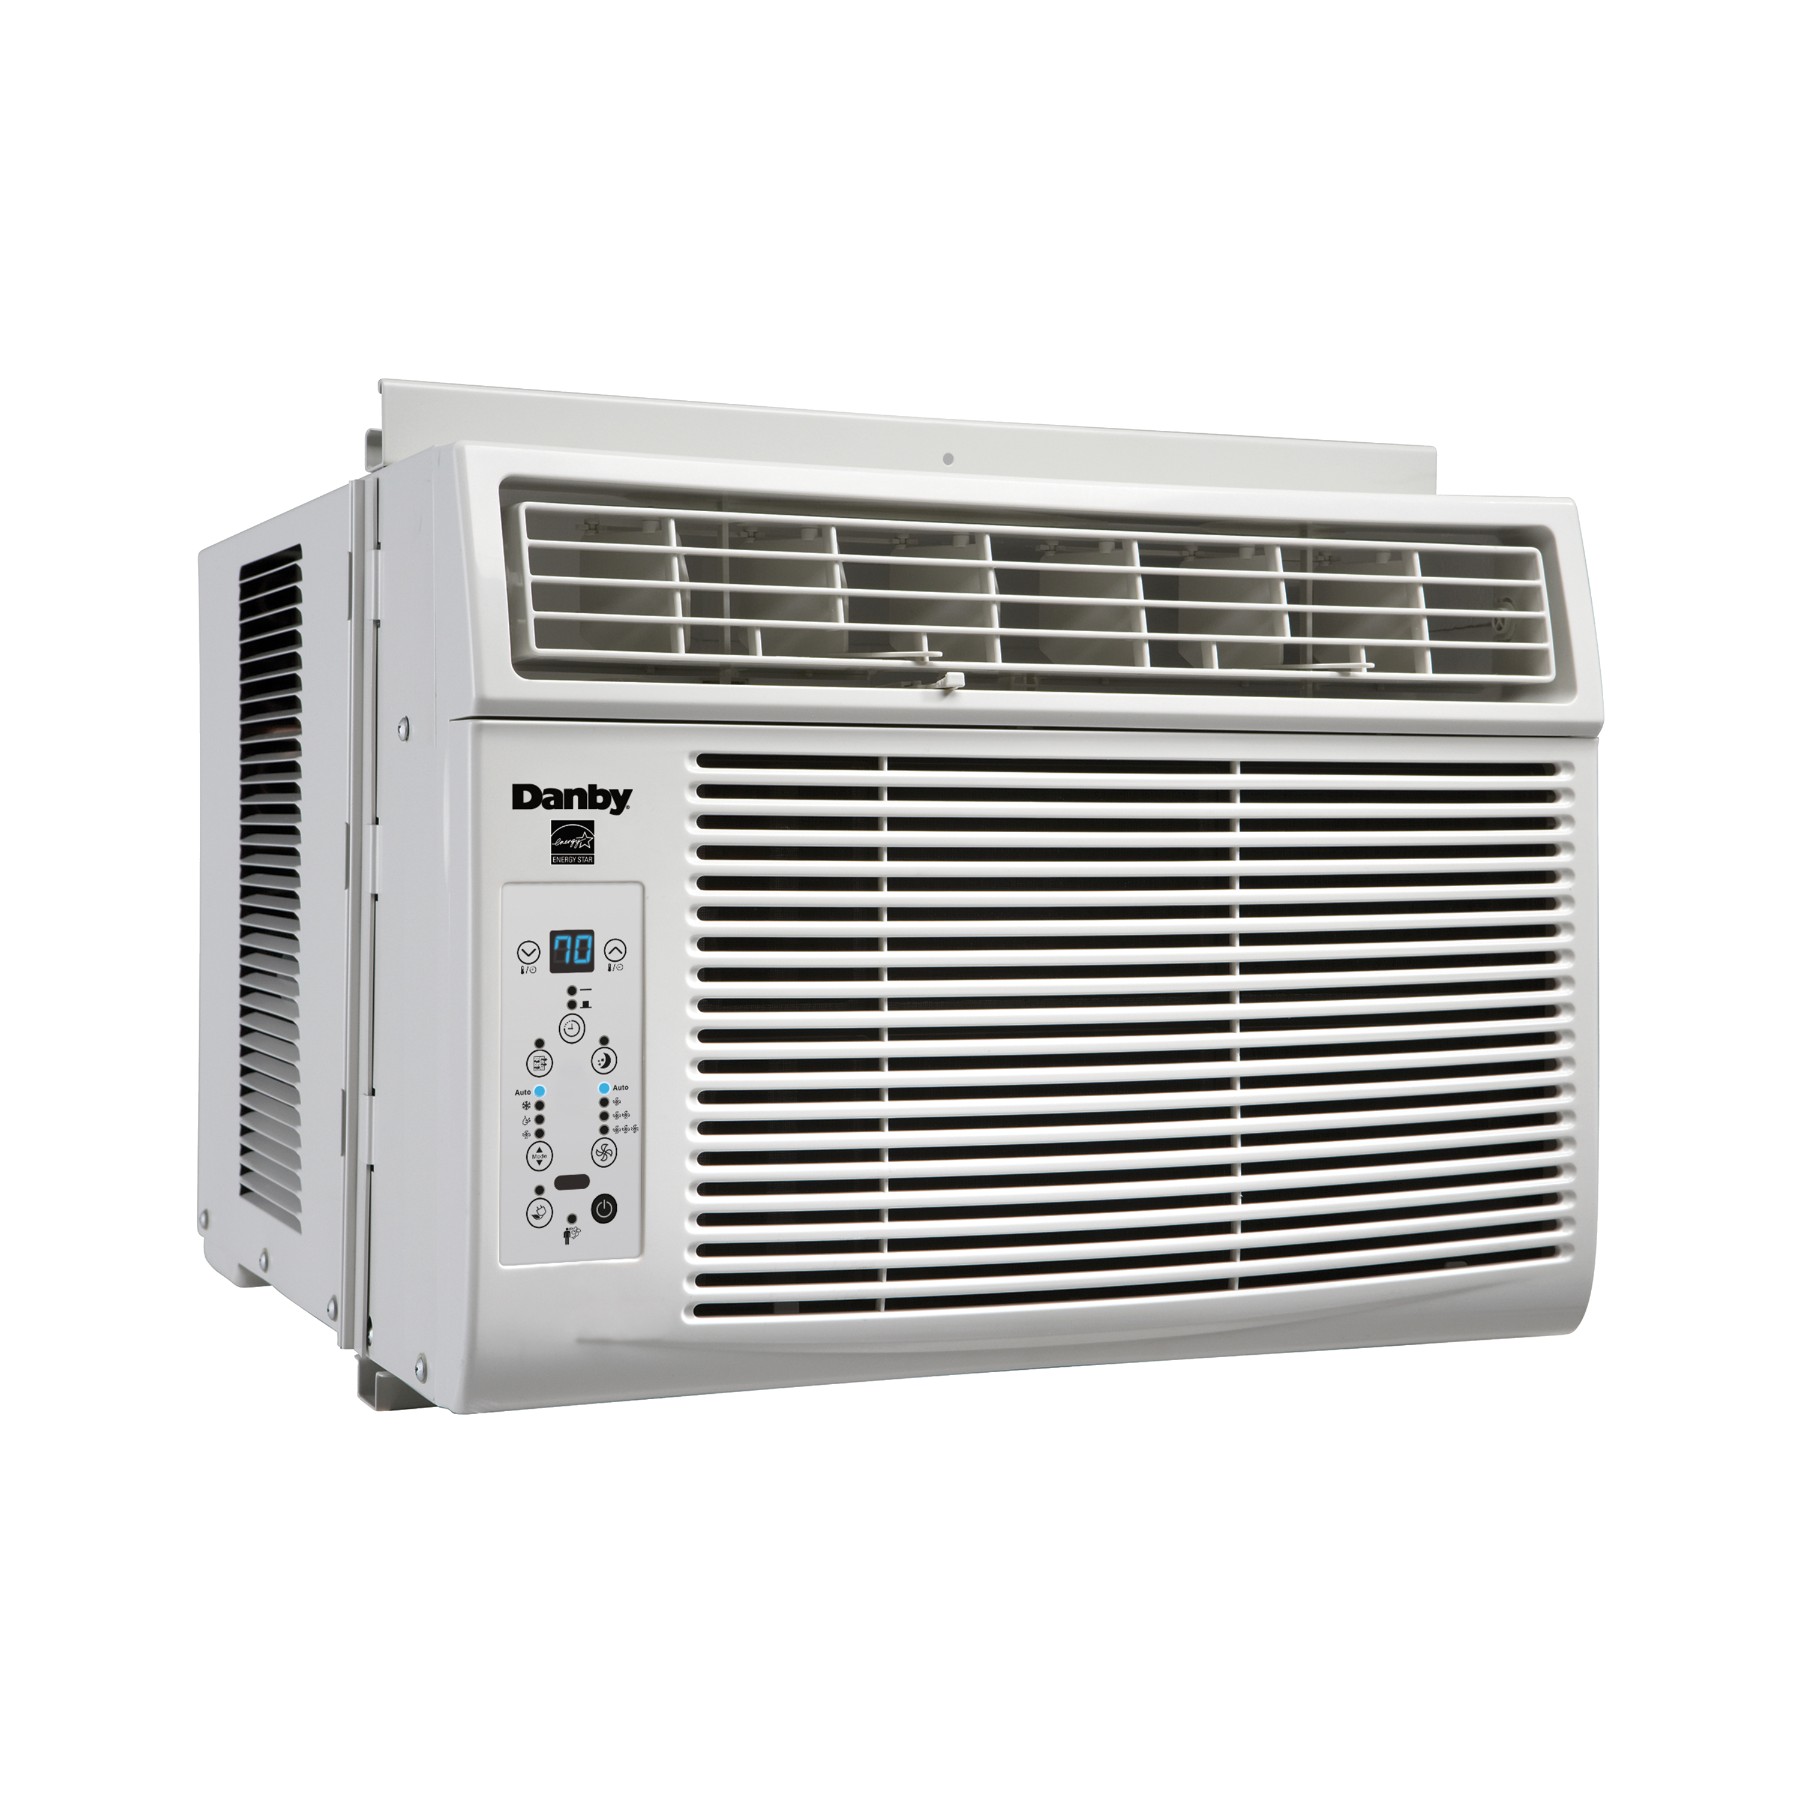 Dac100eb1wdb Danby 10 000 Btu Window Air Conditioner With